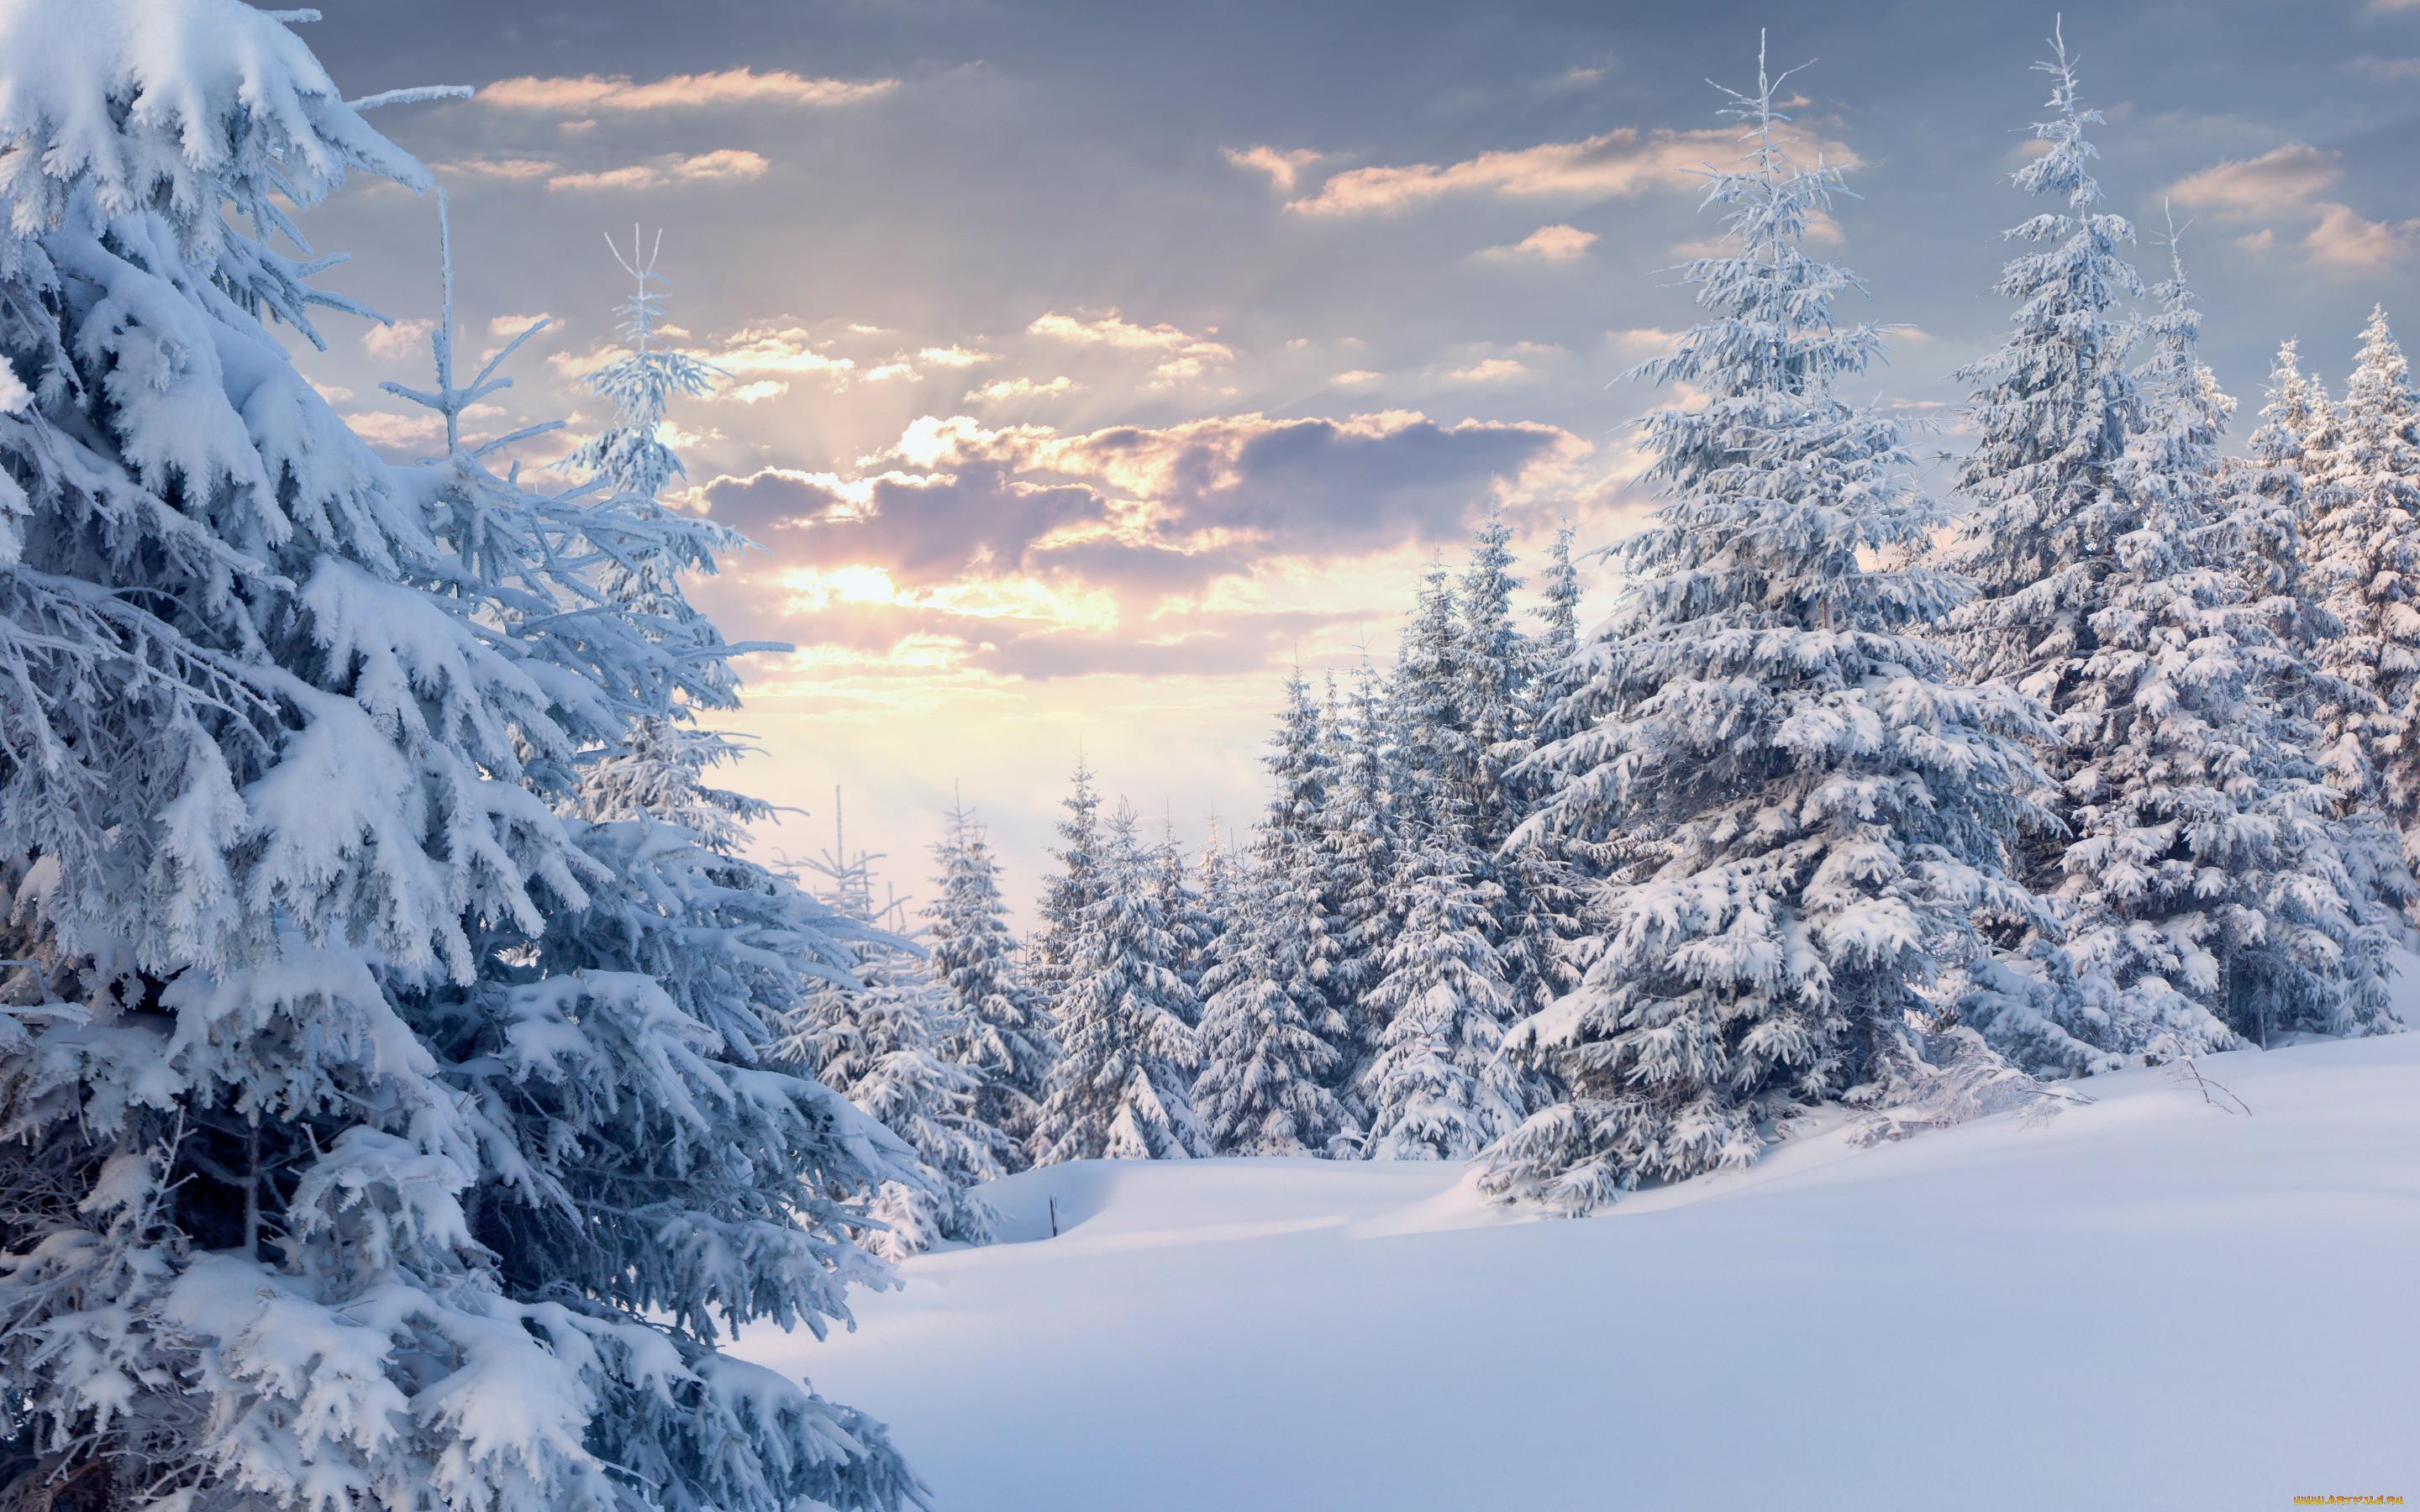 Обои Природа Зима, обои для рабочего стола, фотографии природа, зима, лес,  облака, снег, ёлки Обои для рабочего стола, скачать обои картинки заставки  на рабочий стол.